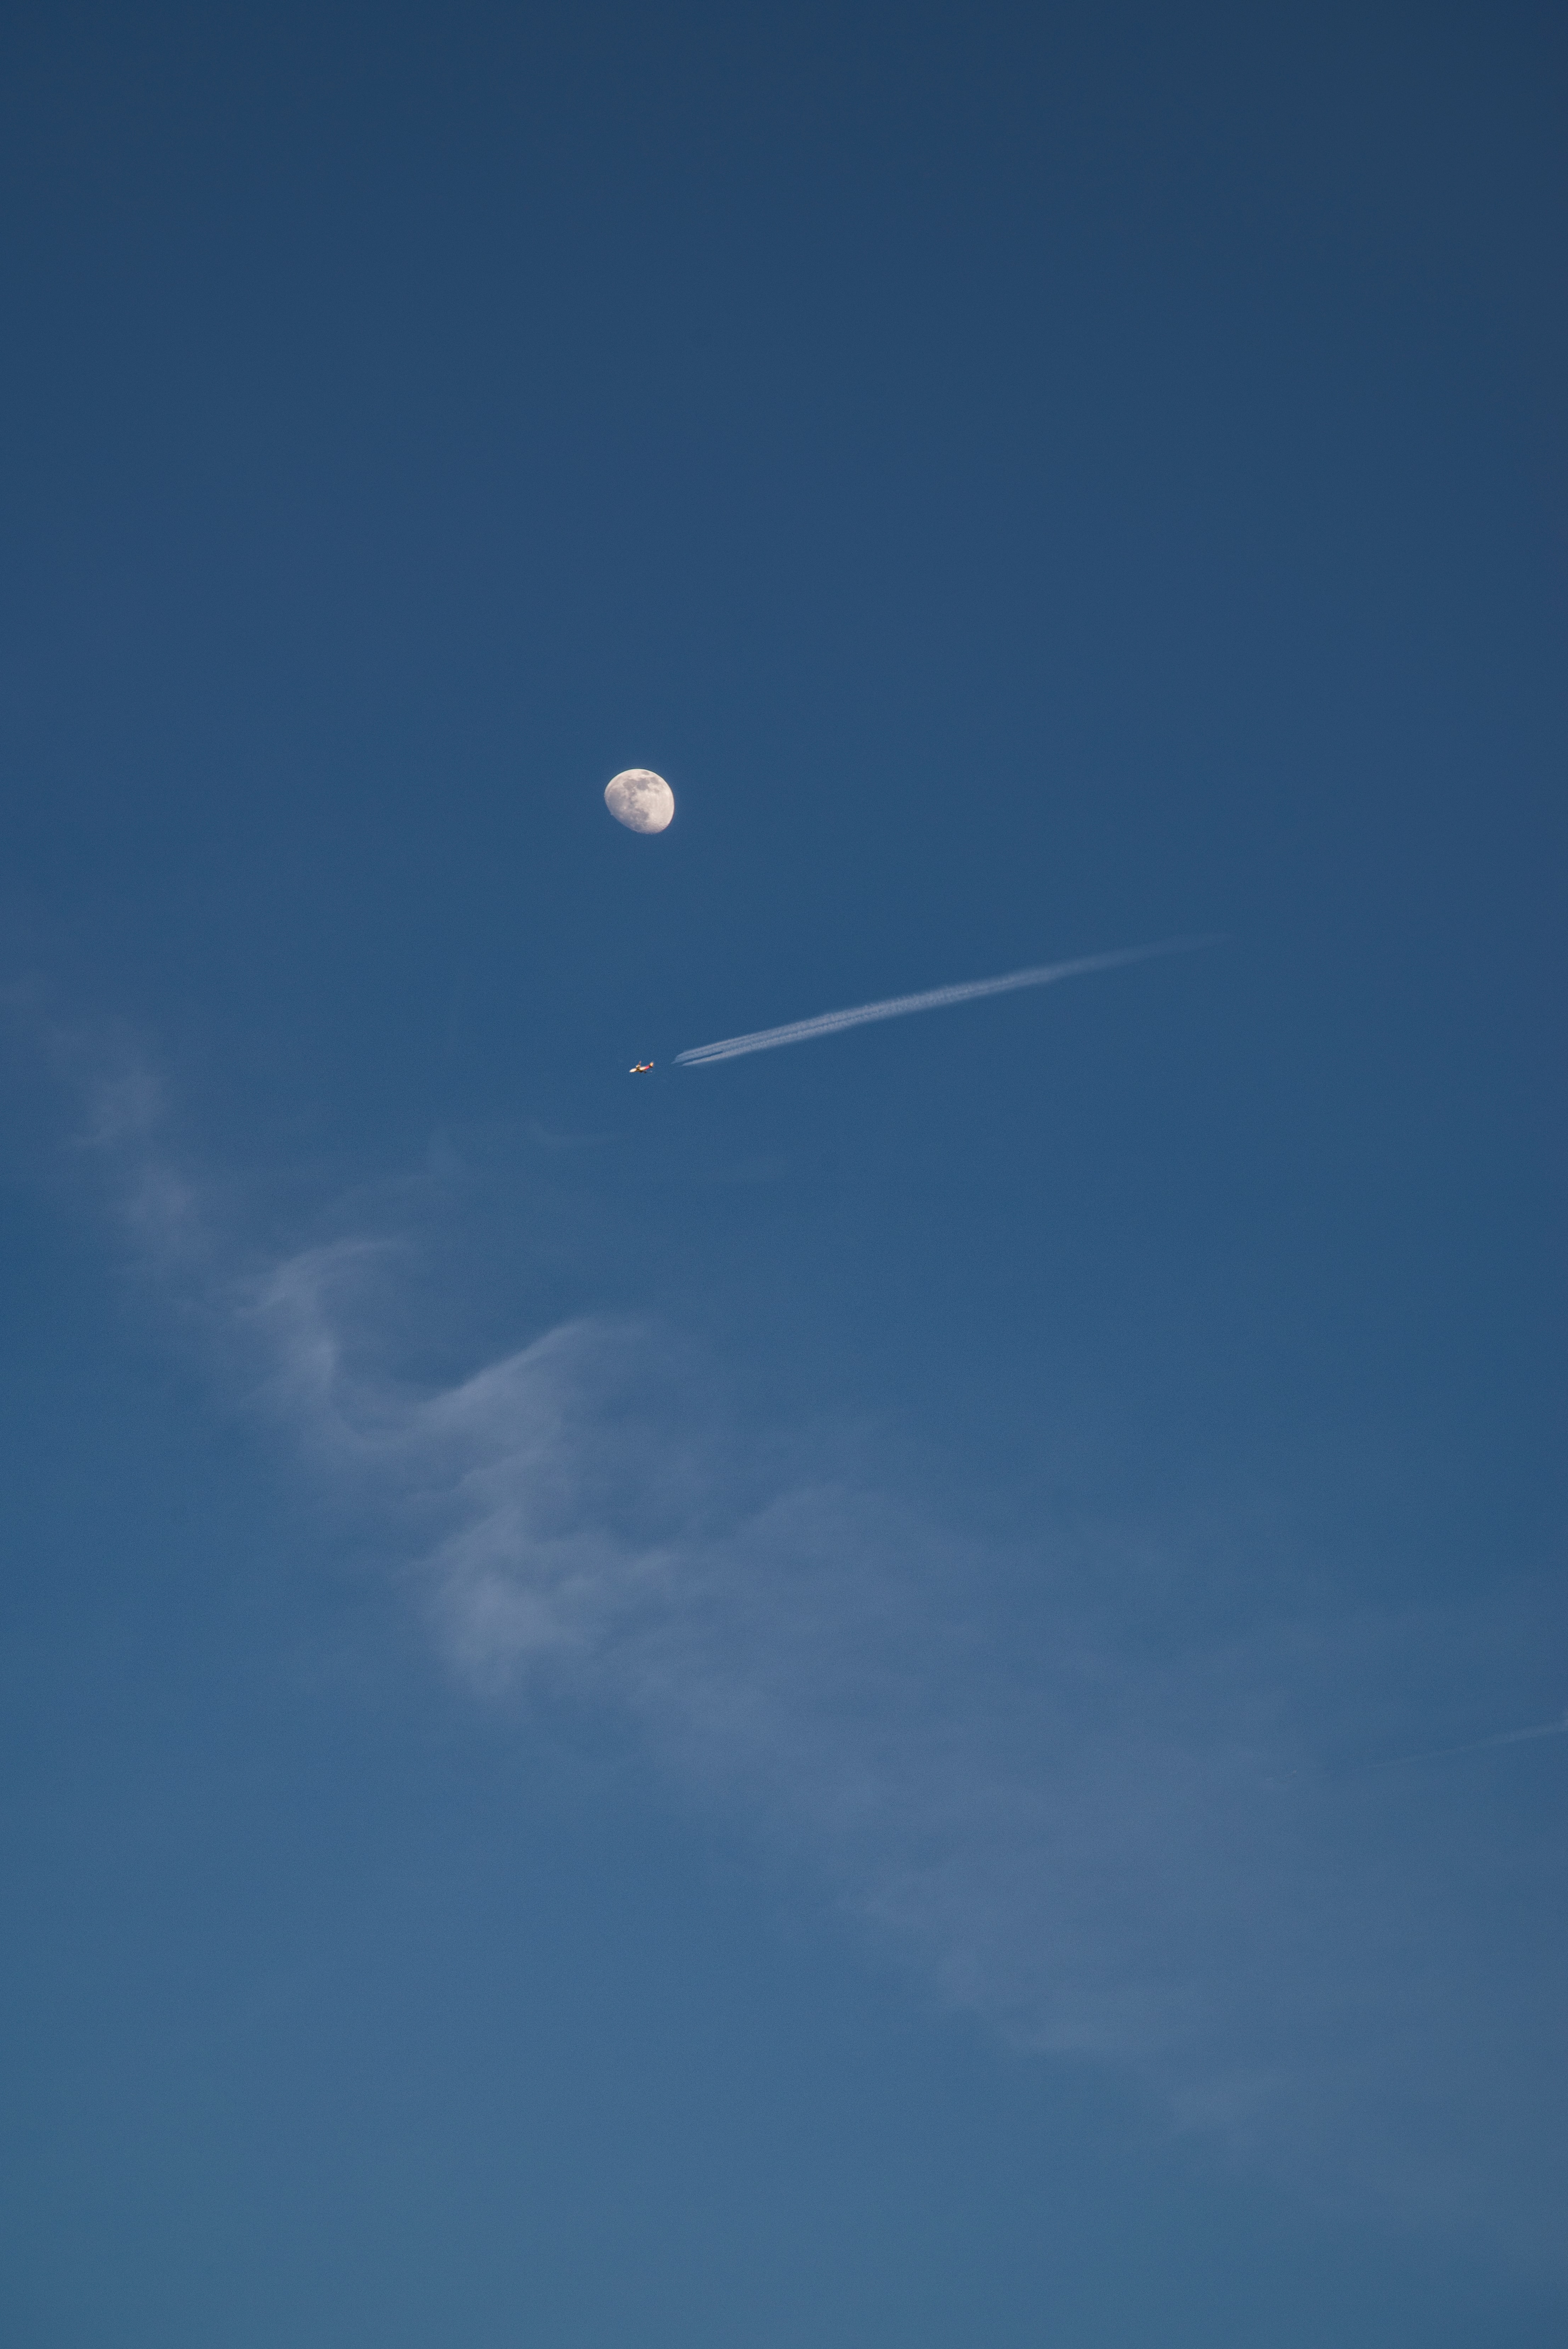 Скачать обои бесплатно Облака, Природа, Небо, Полнолуние, Самолет, Луна картинка на рабочий стол ПК